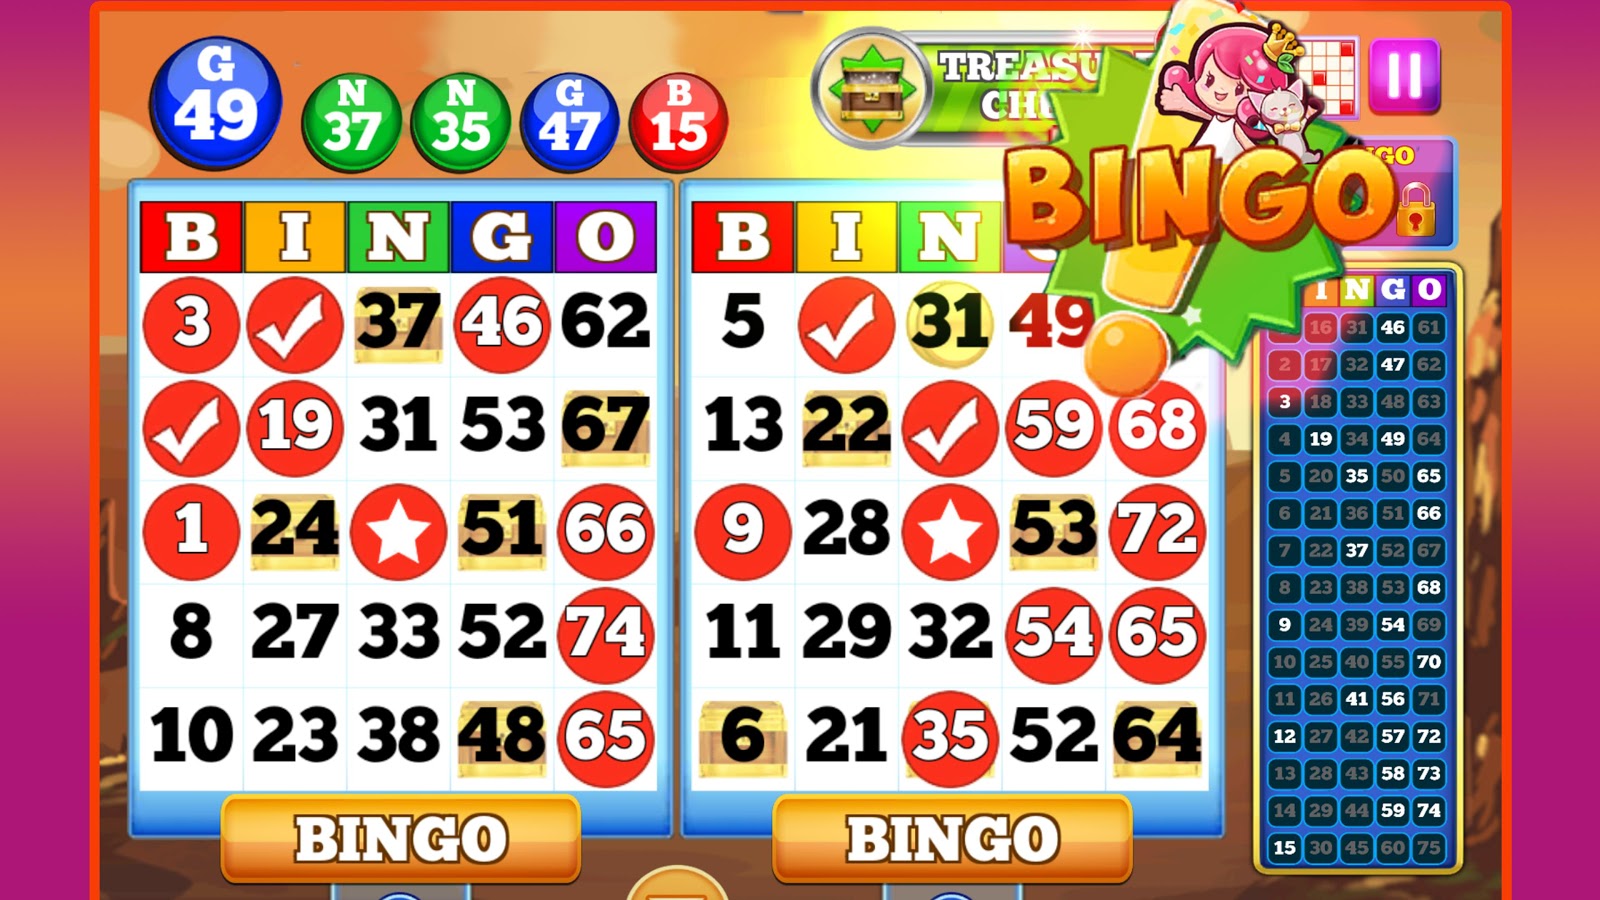 Casino bingo online - 55173